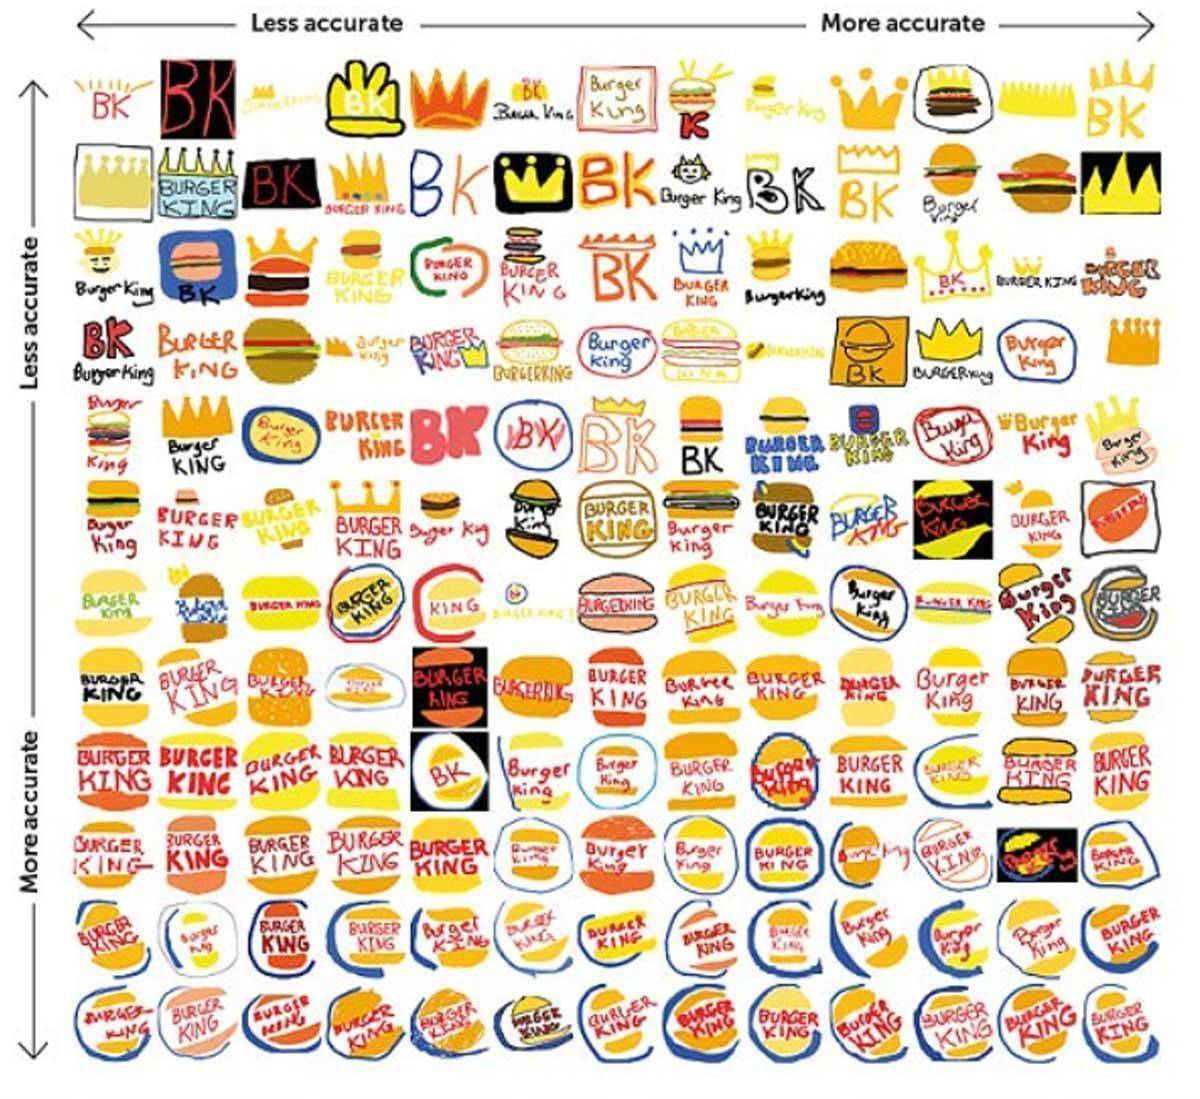 Viele Krönchen, viele Burger: BK-Logo, aus dem Gedächtnis gemalt.